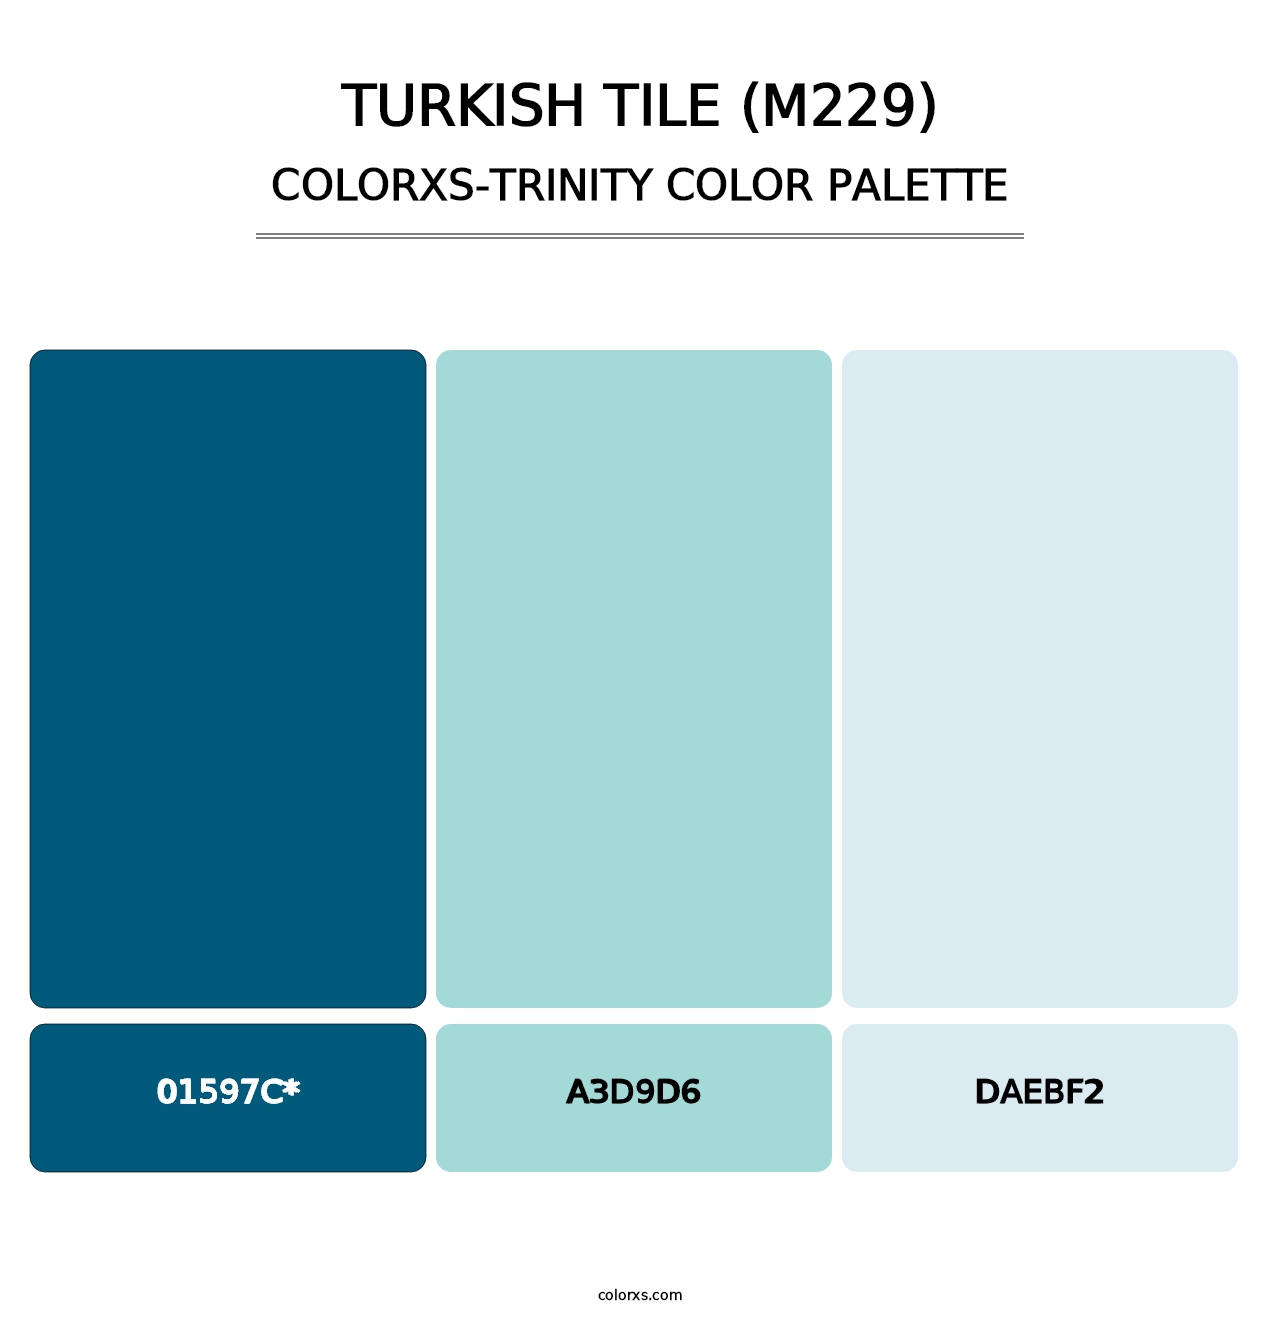 Turkish Tile (M229) - Colorxs Trinity Palette